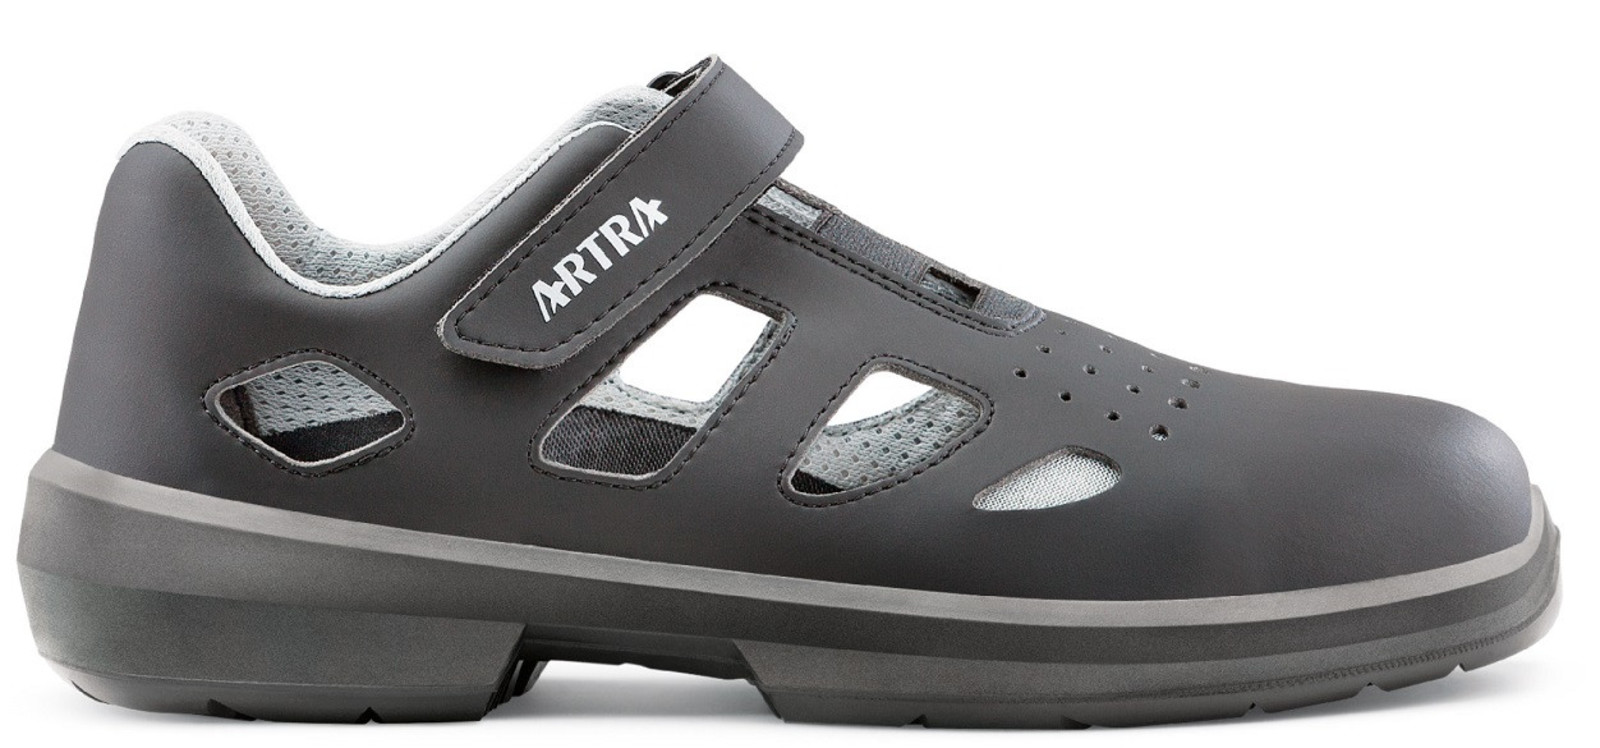 Bezpečnostné sandále Artra Ario 801 661460 S1P - veľkosť: 47, farba: čierna